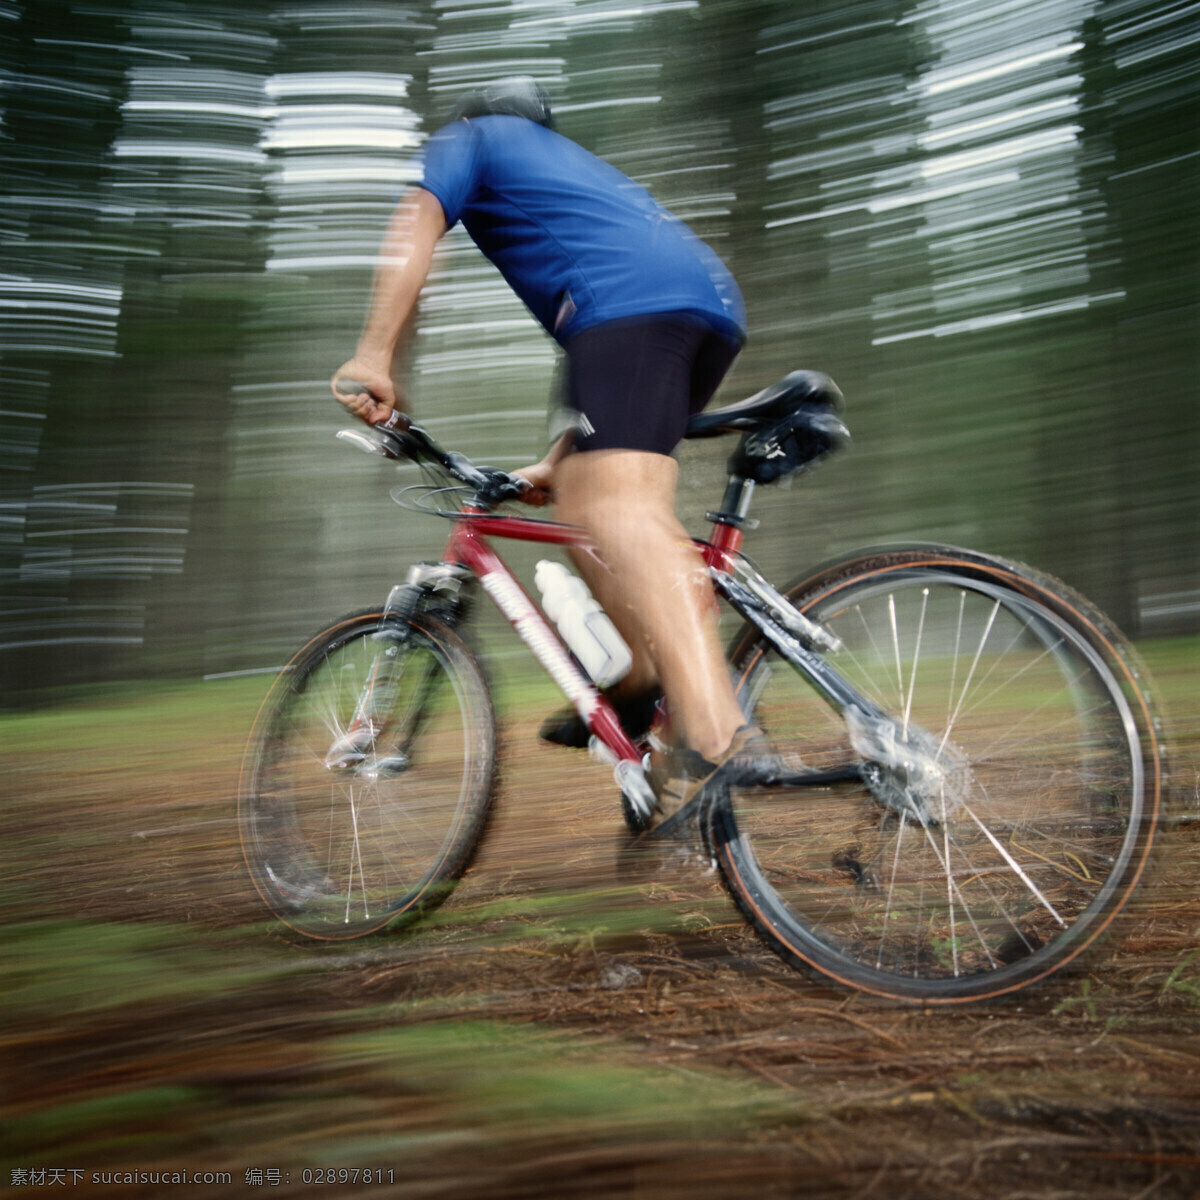 高速 骑车 人物 自行车 单车 户外运动 旅游 户外旅游 人物素材 人物摄影 生活人物 人物图片